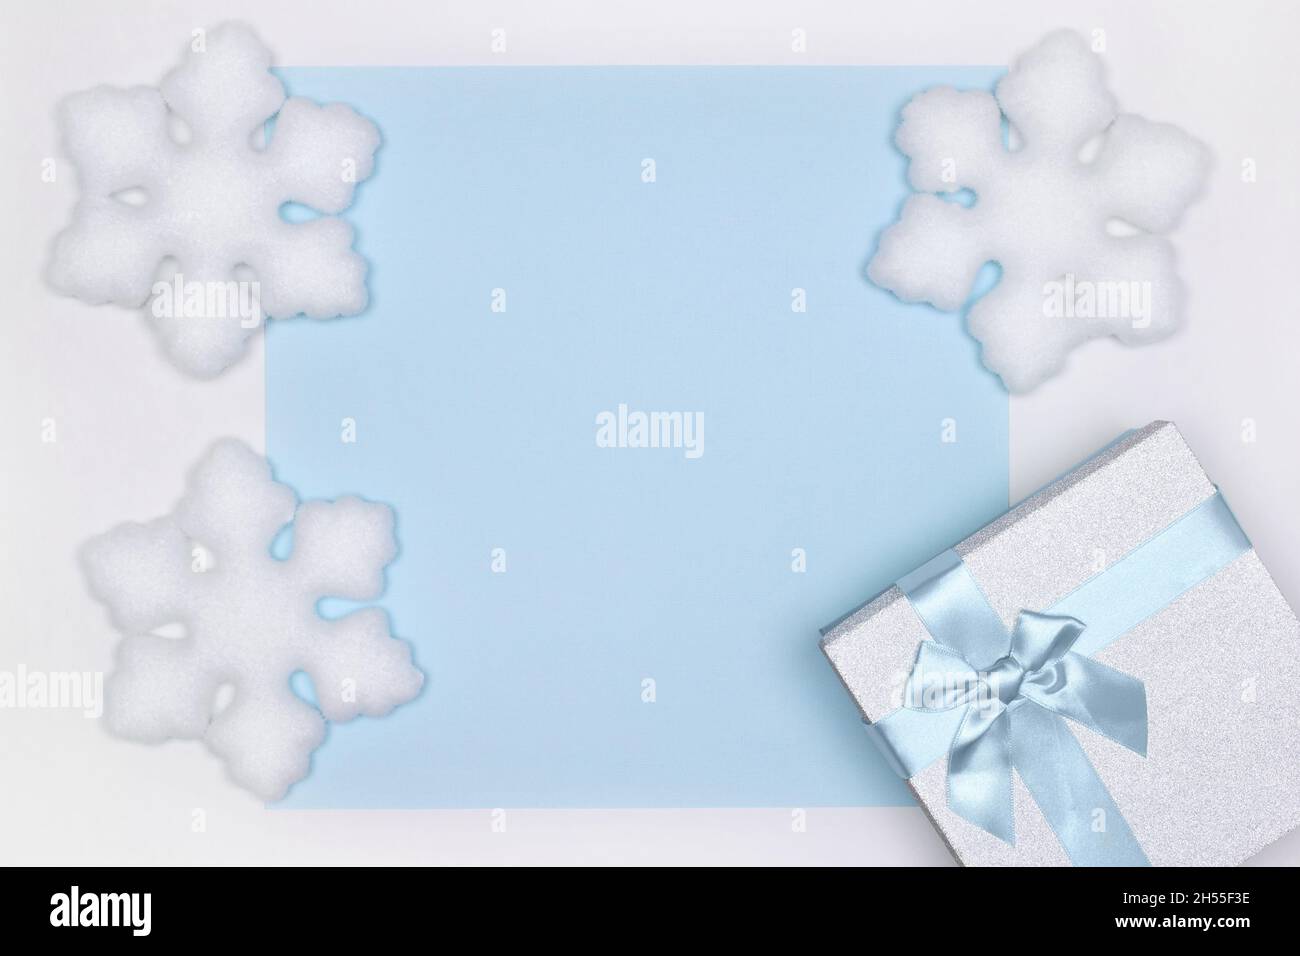 Boîte cadeau avec décorations en forme de flocons de neige blancs.Copier l'espace.Hiver vacances fond bleu Banque D'Images